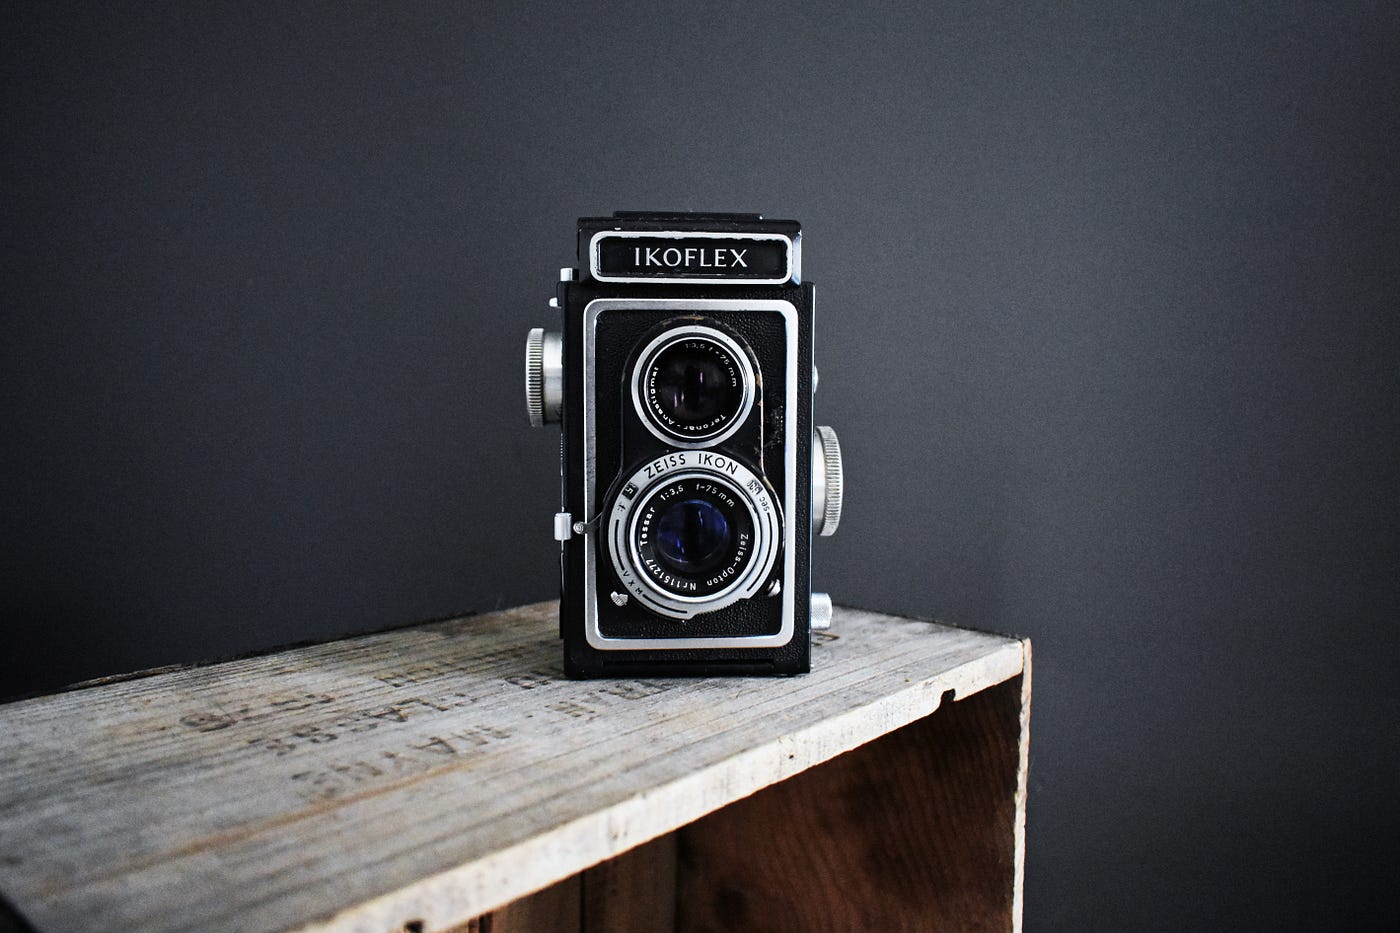 Hvorfor jeg (næsten) kun fotograferer med analog kamera | by Niklas H-L |  Medium